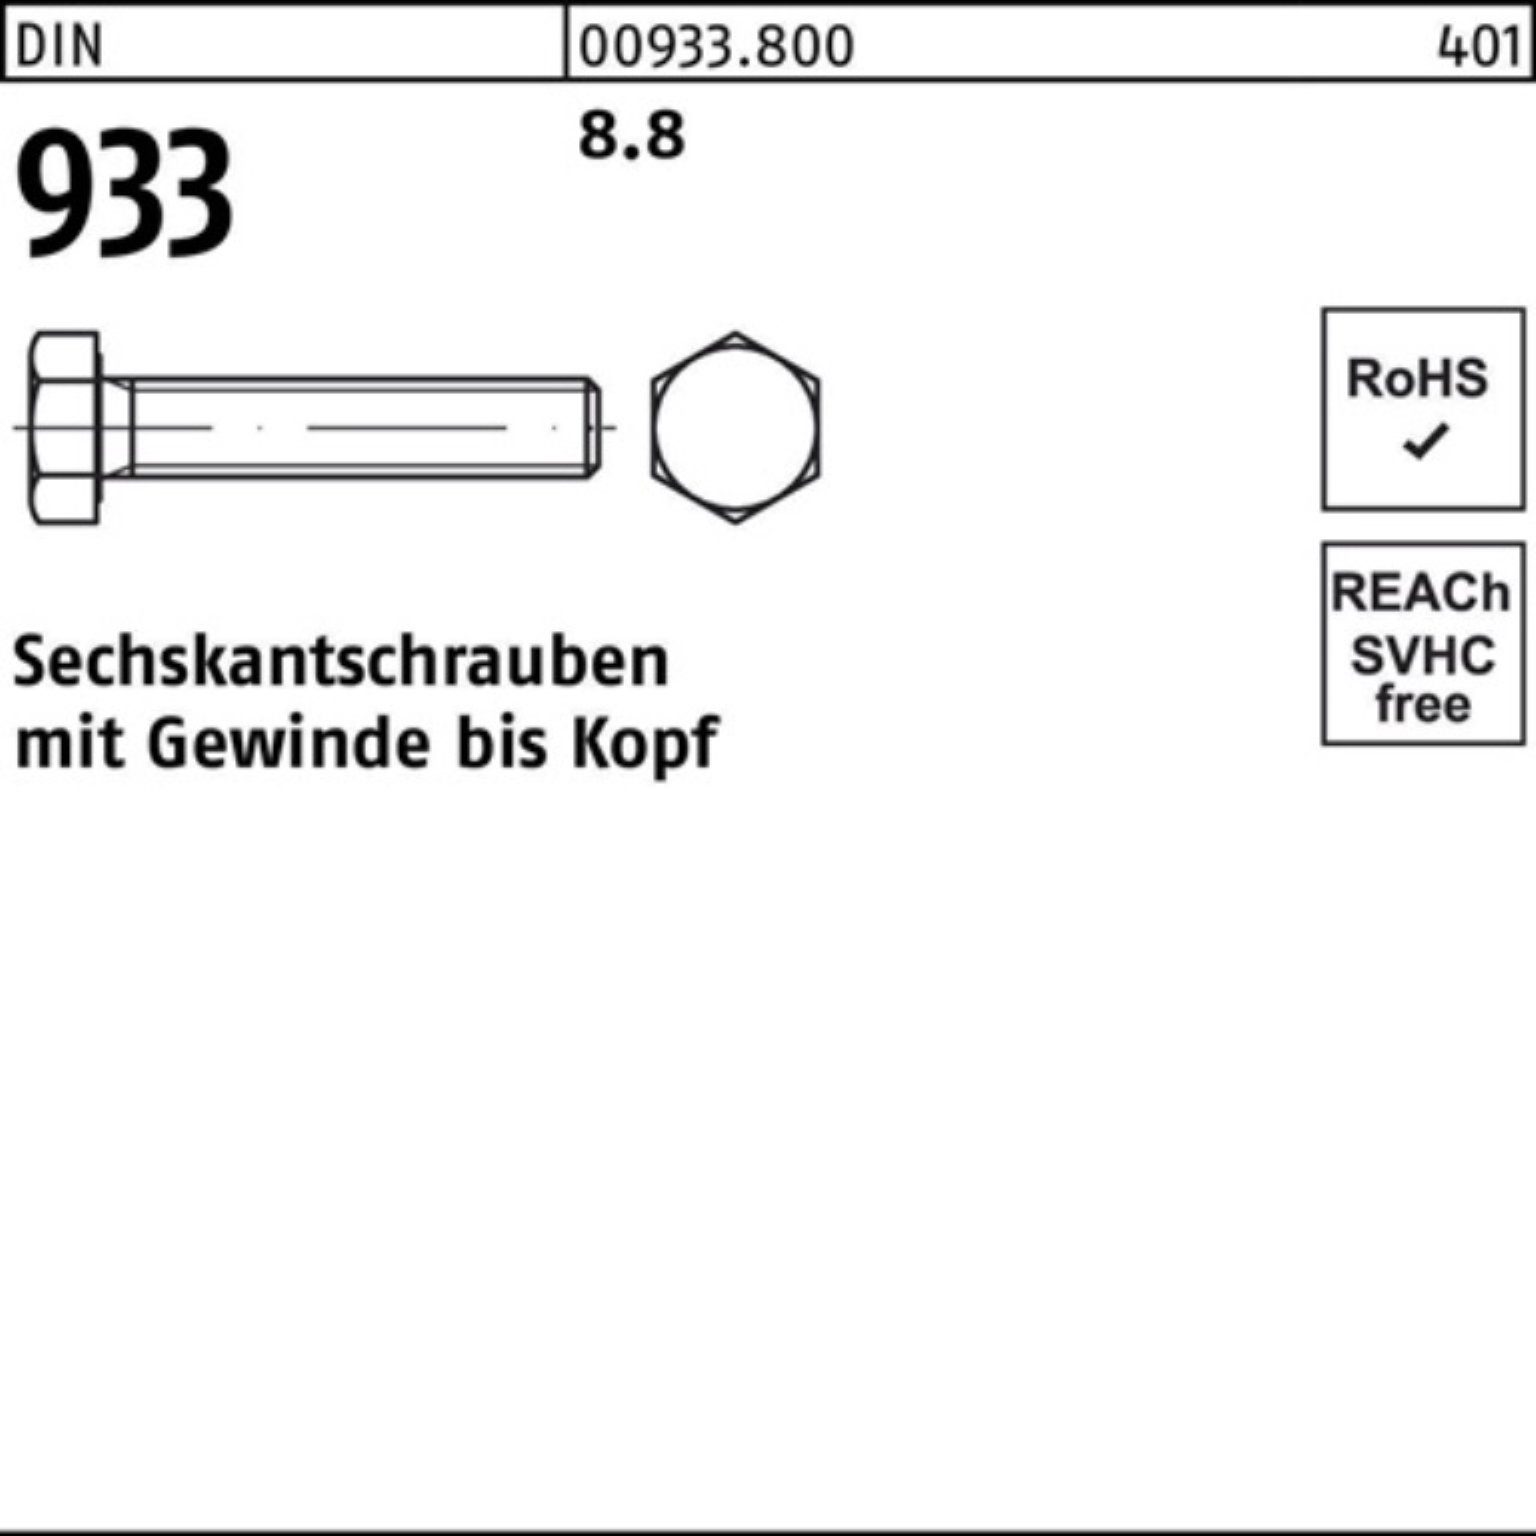 Sechskantschraube Stück VG 933 Pack DIN 100er 8 DIN 8.8 Reyher M36x 1 60 Sechskantschraube 933